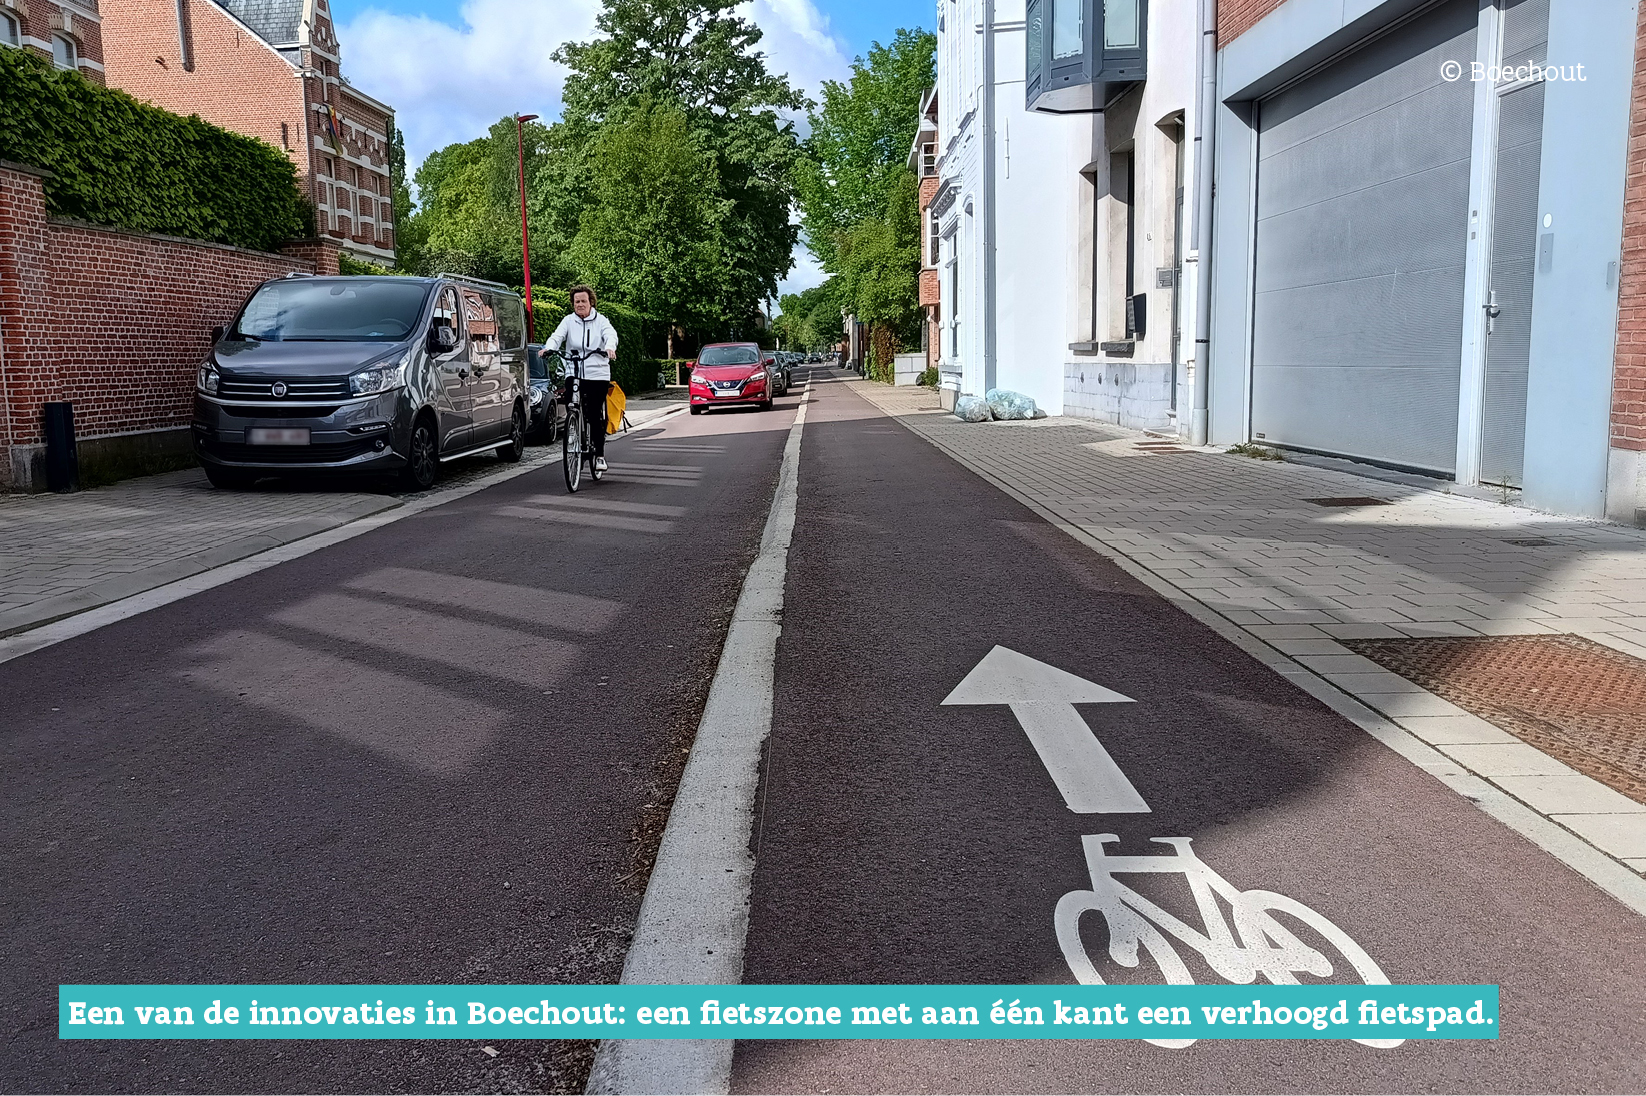 Een van de innovaties in Boechout: een fietszone met aan één kant een verhoogd fietspad